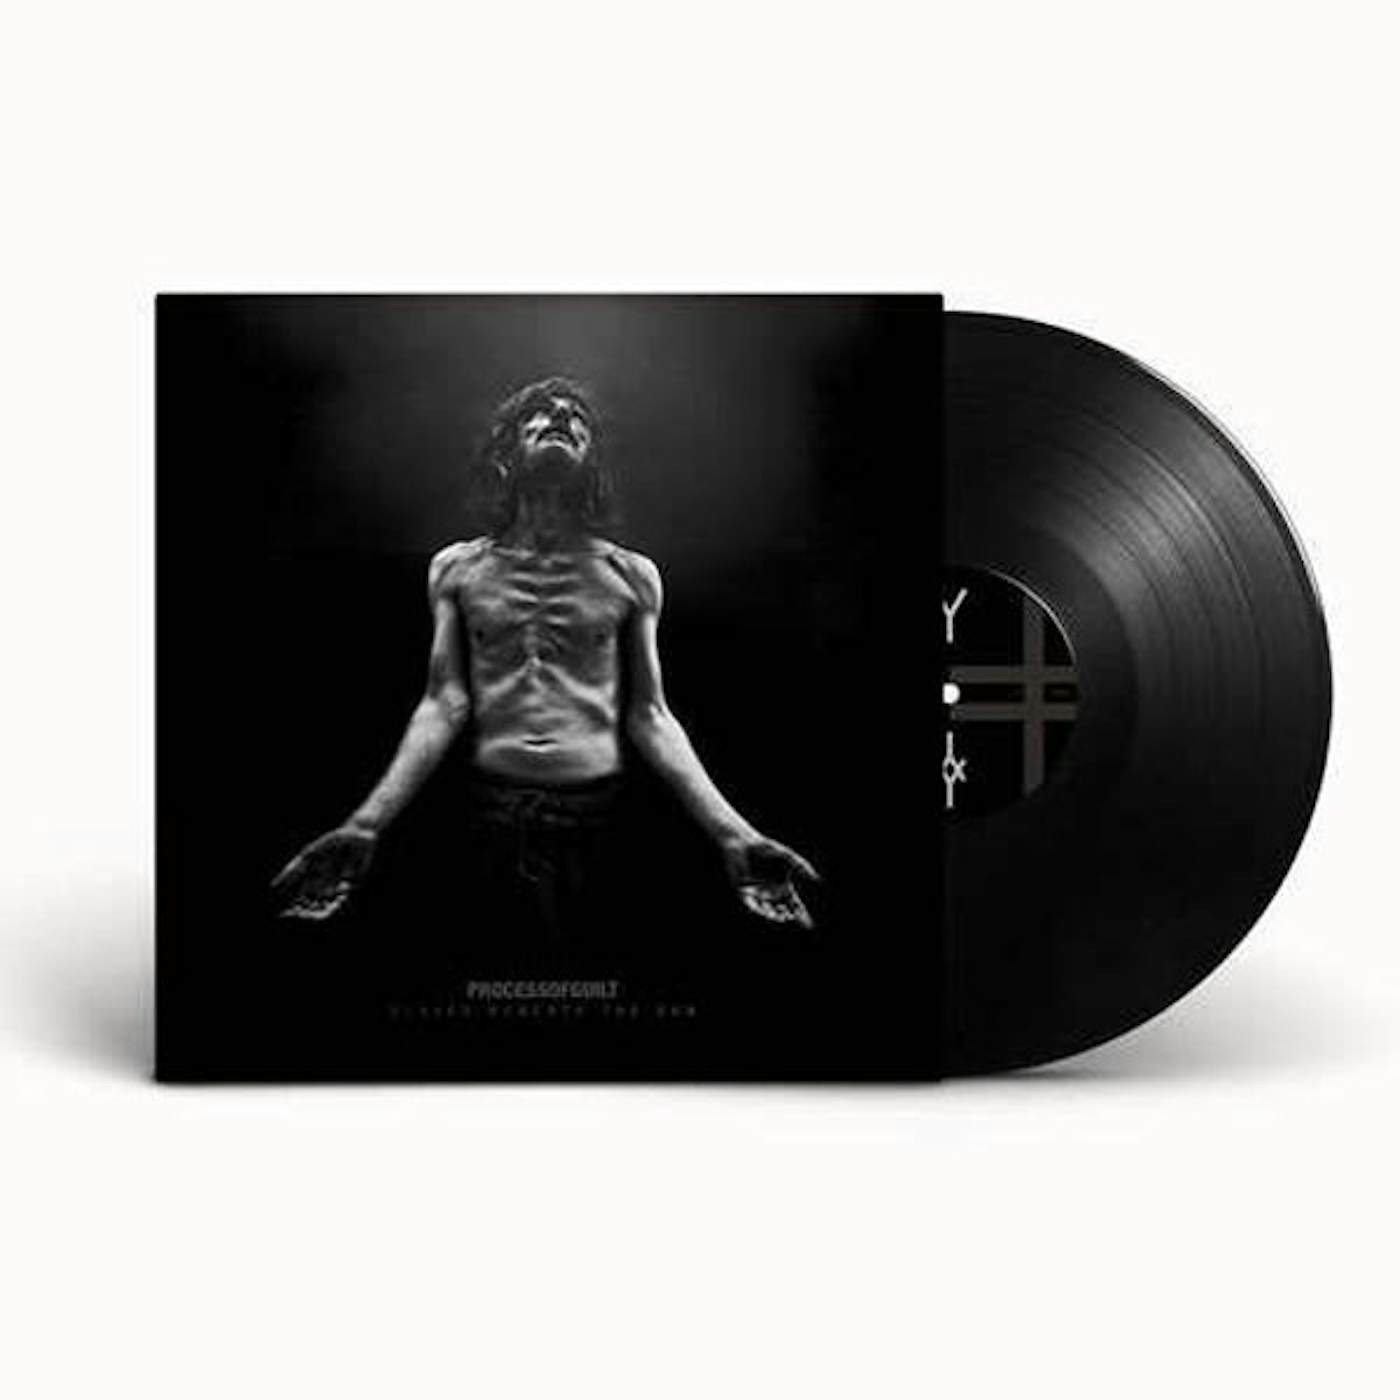 Process Of Guilt LP - Slaves Beneath The Sun (Vinyl)